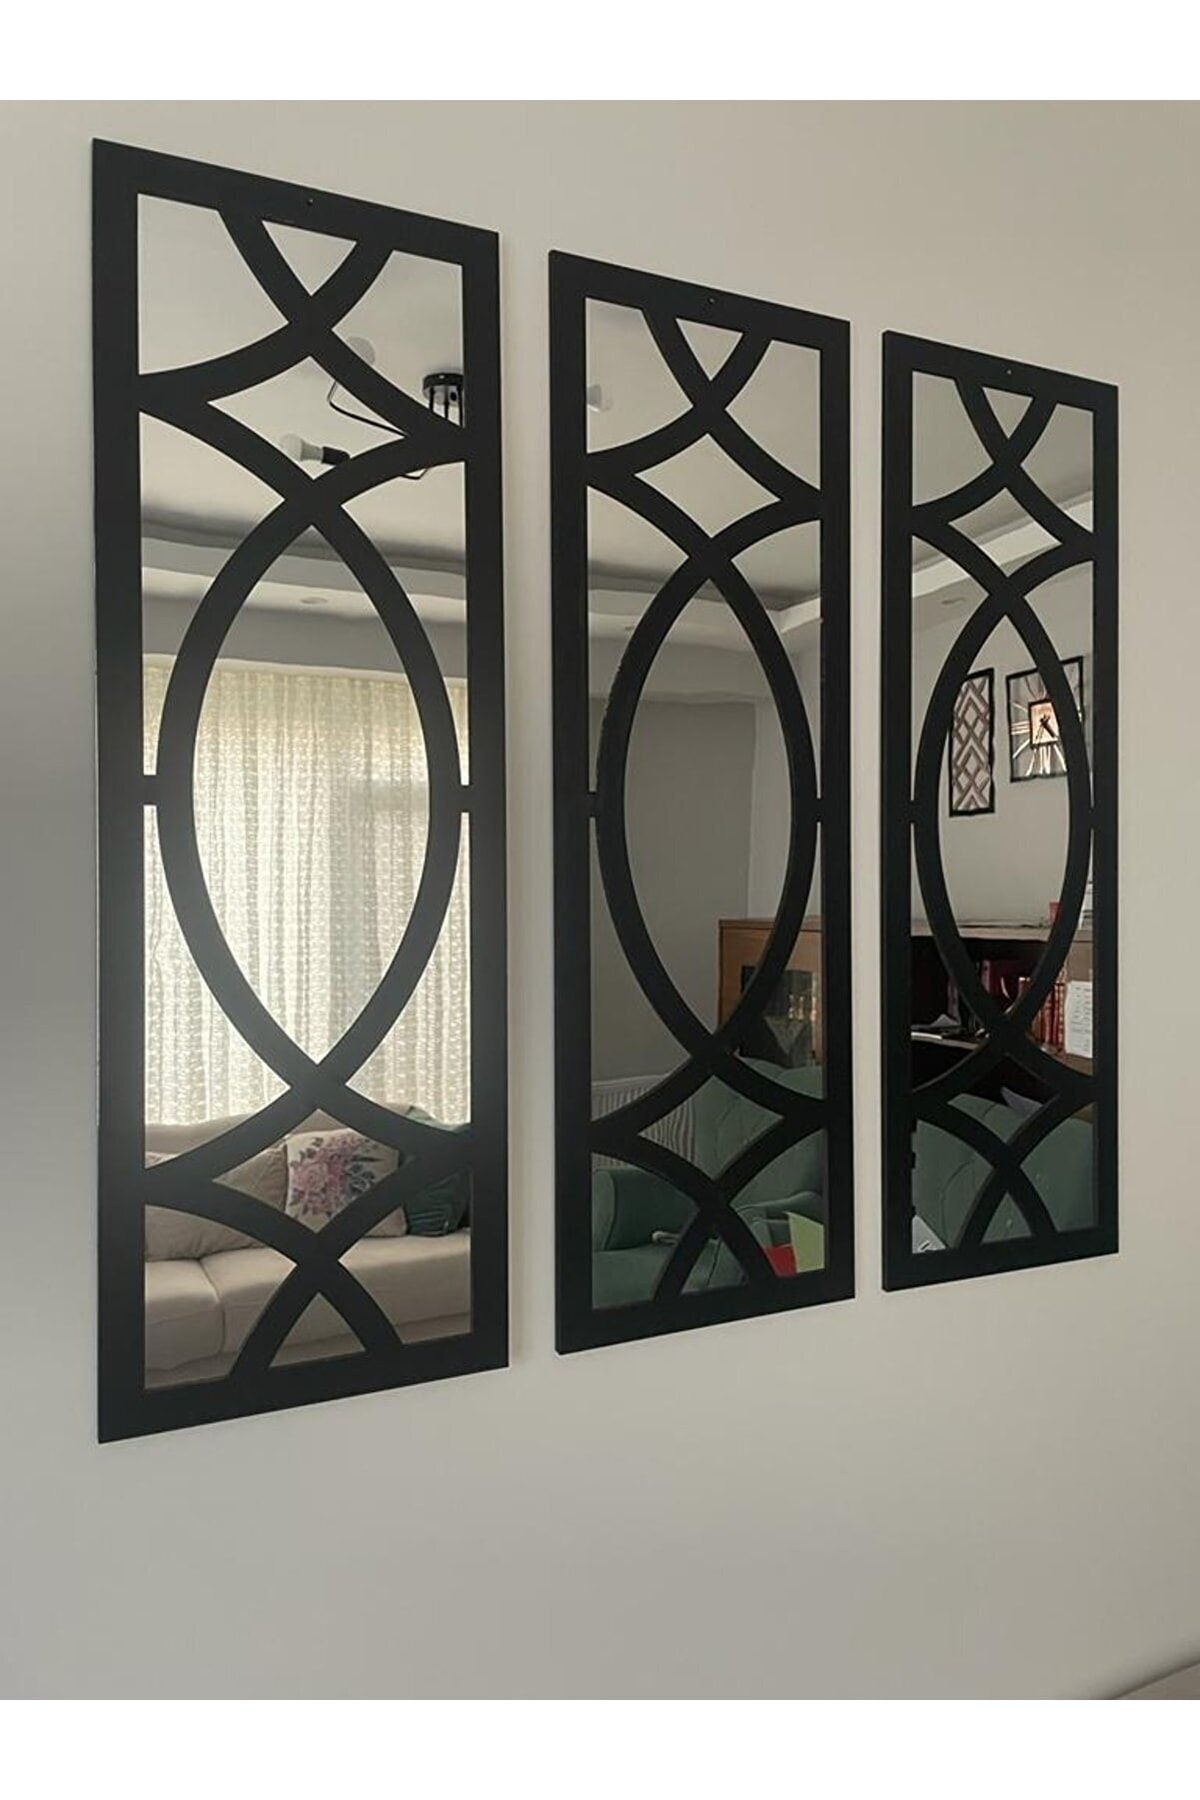 ONCA HEDİYELİK Dekoratif Geometrik Desenli Ayna Boyalı Hazır Pleksi Aynalı 3 Adet 20x60 Cm